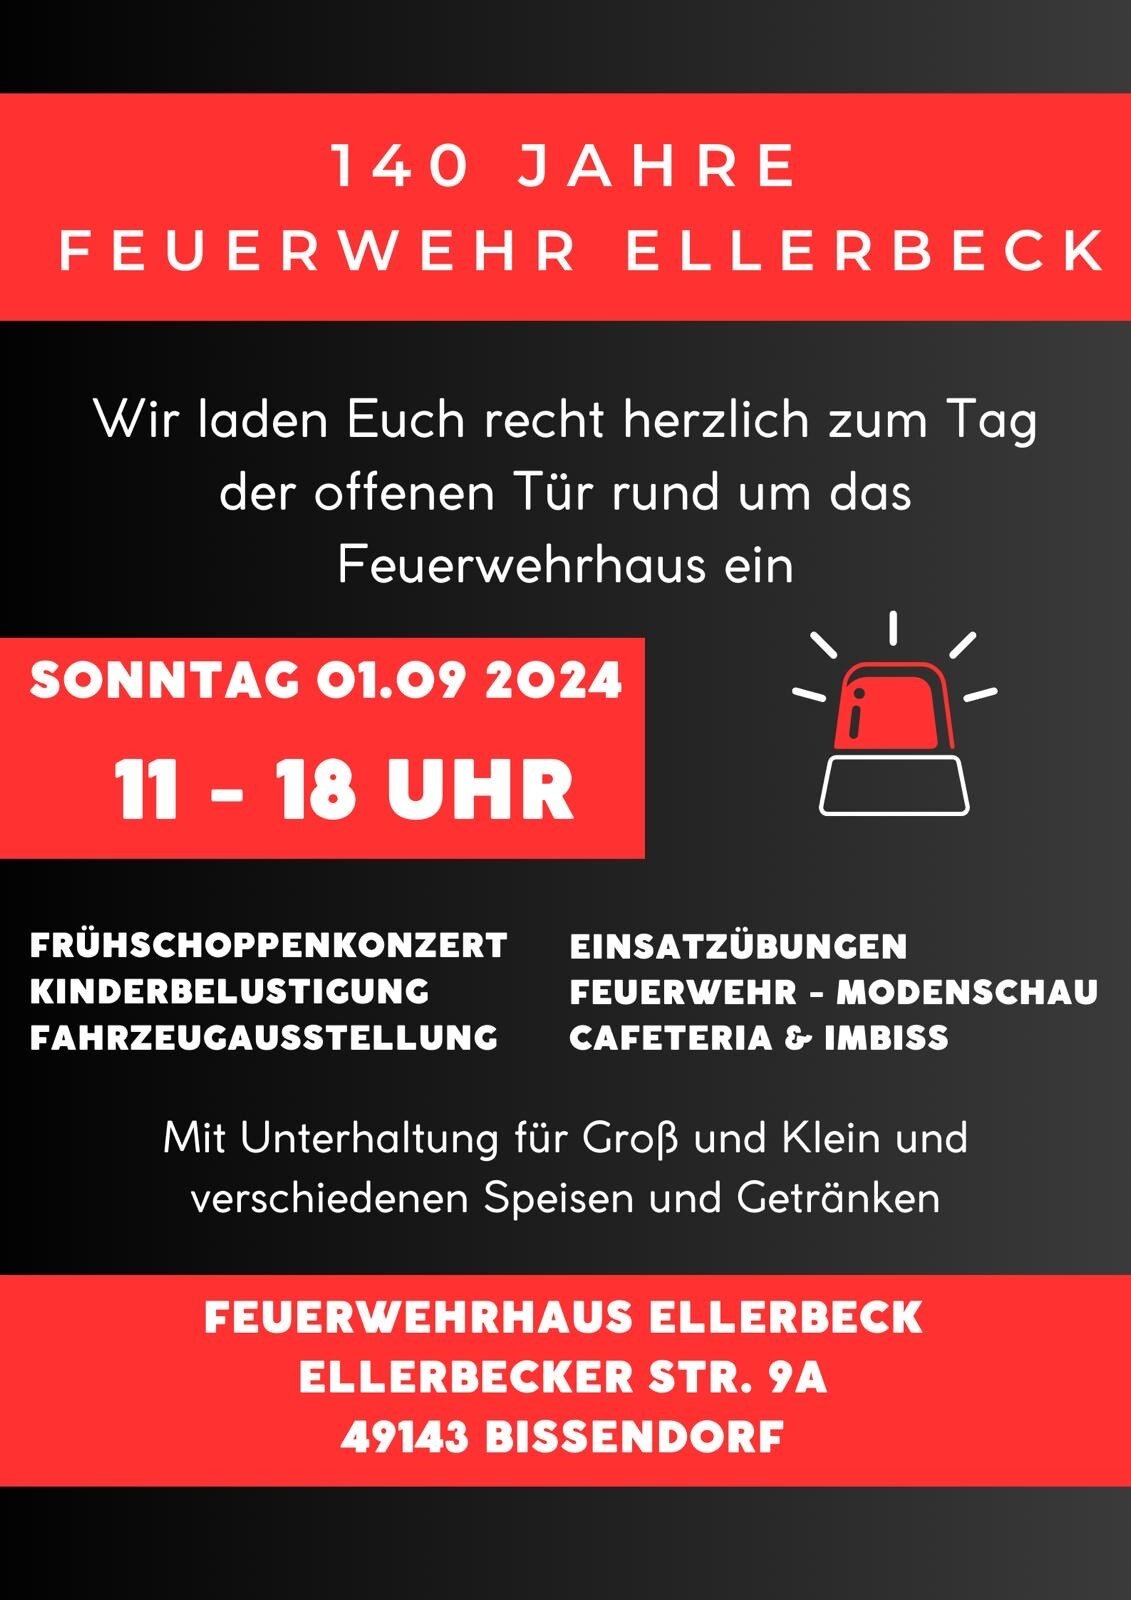 FEuerwehr Ellerbeck